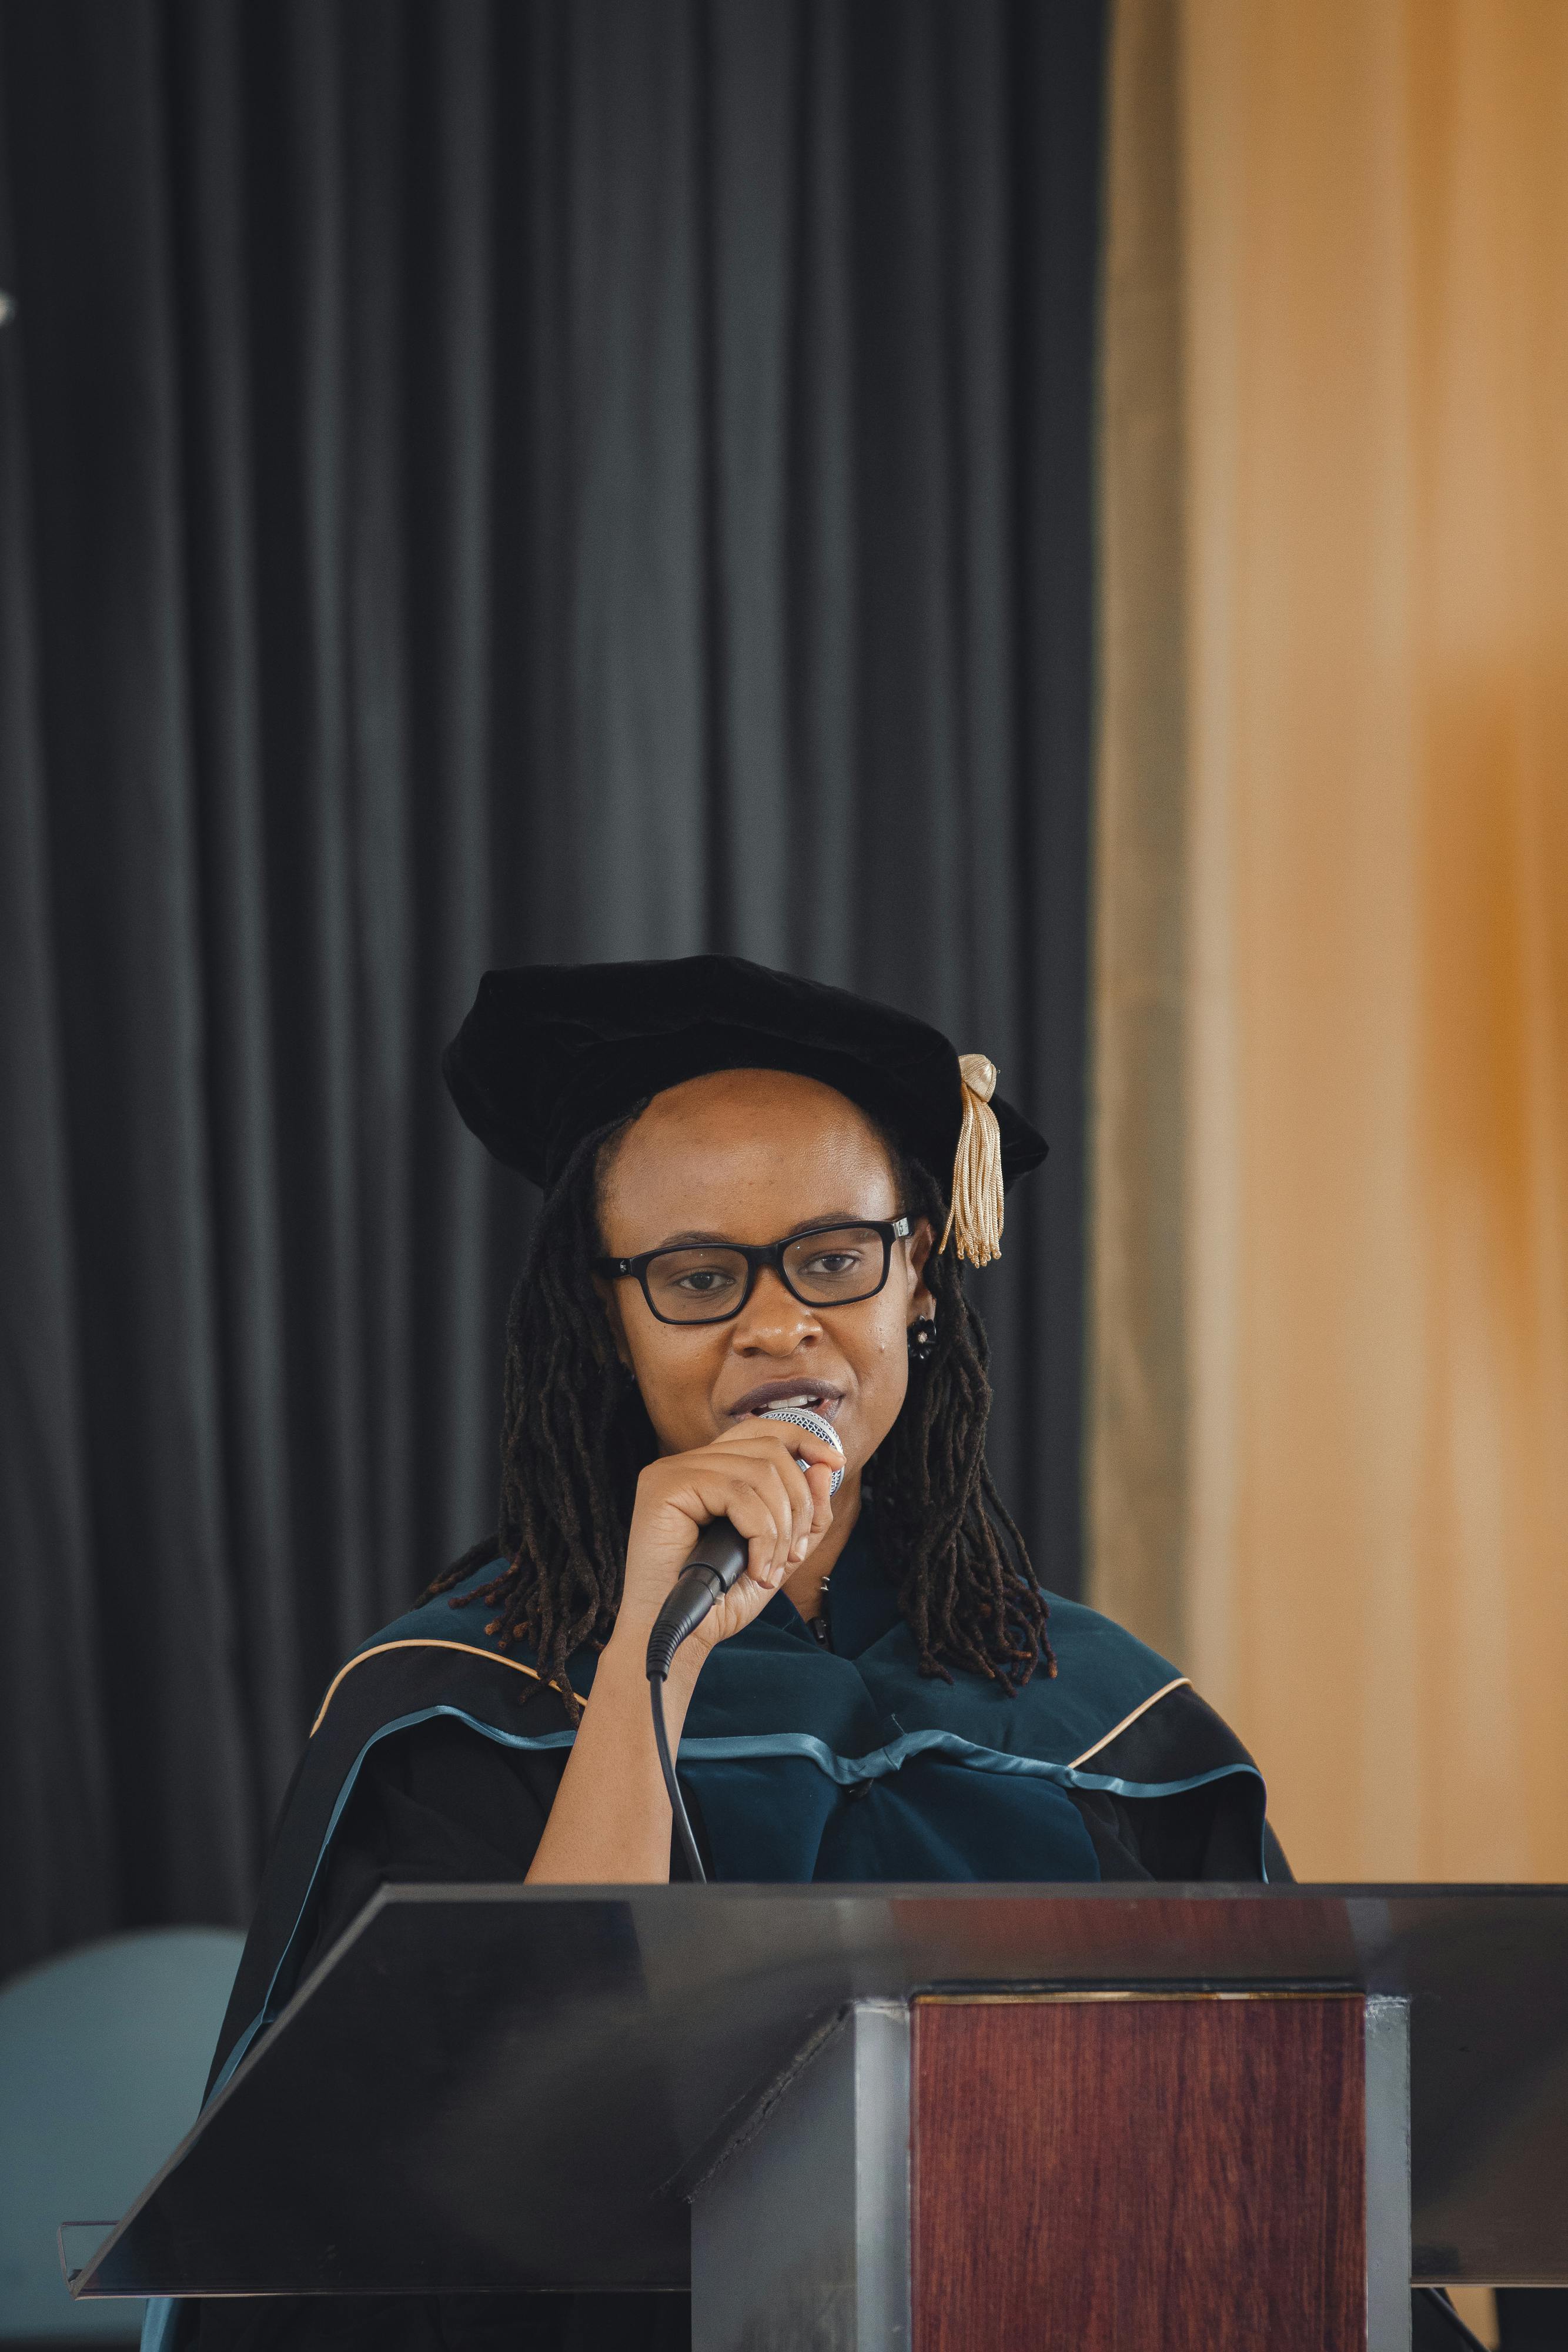 Une diplômée de l'enseignement supérieur s'exprimant au micro sur scène | Source : Pexels